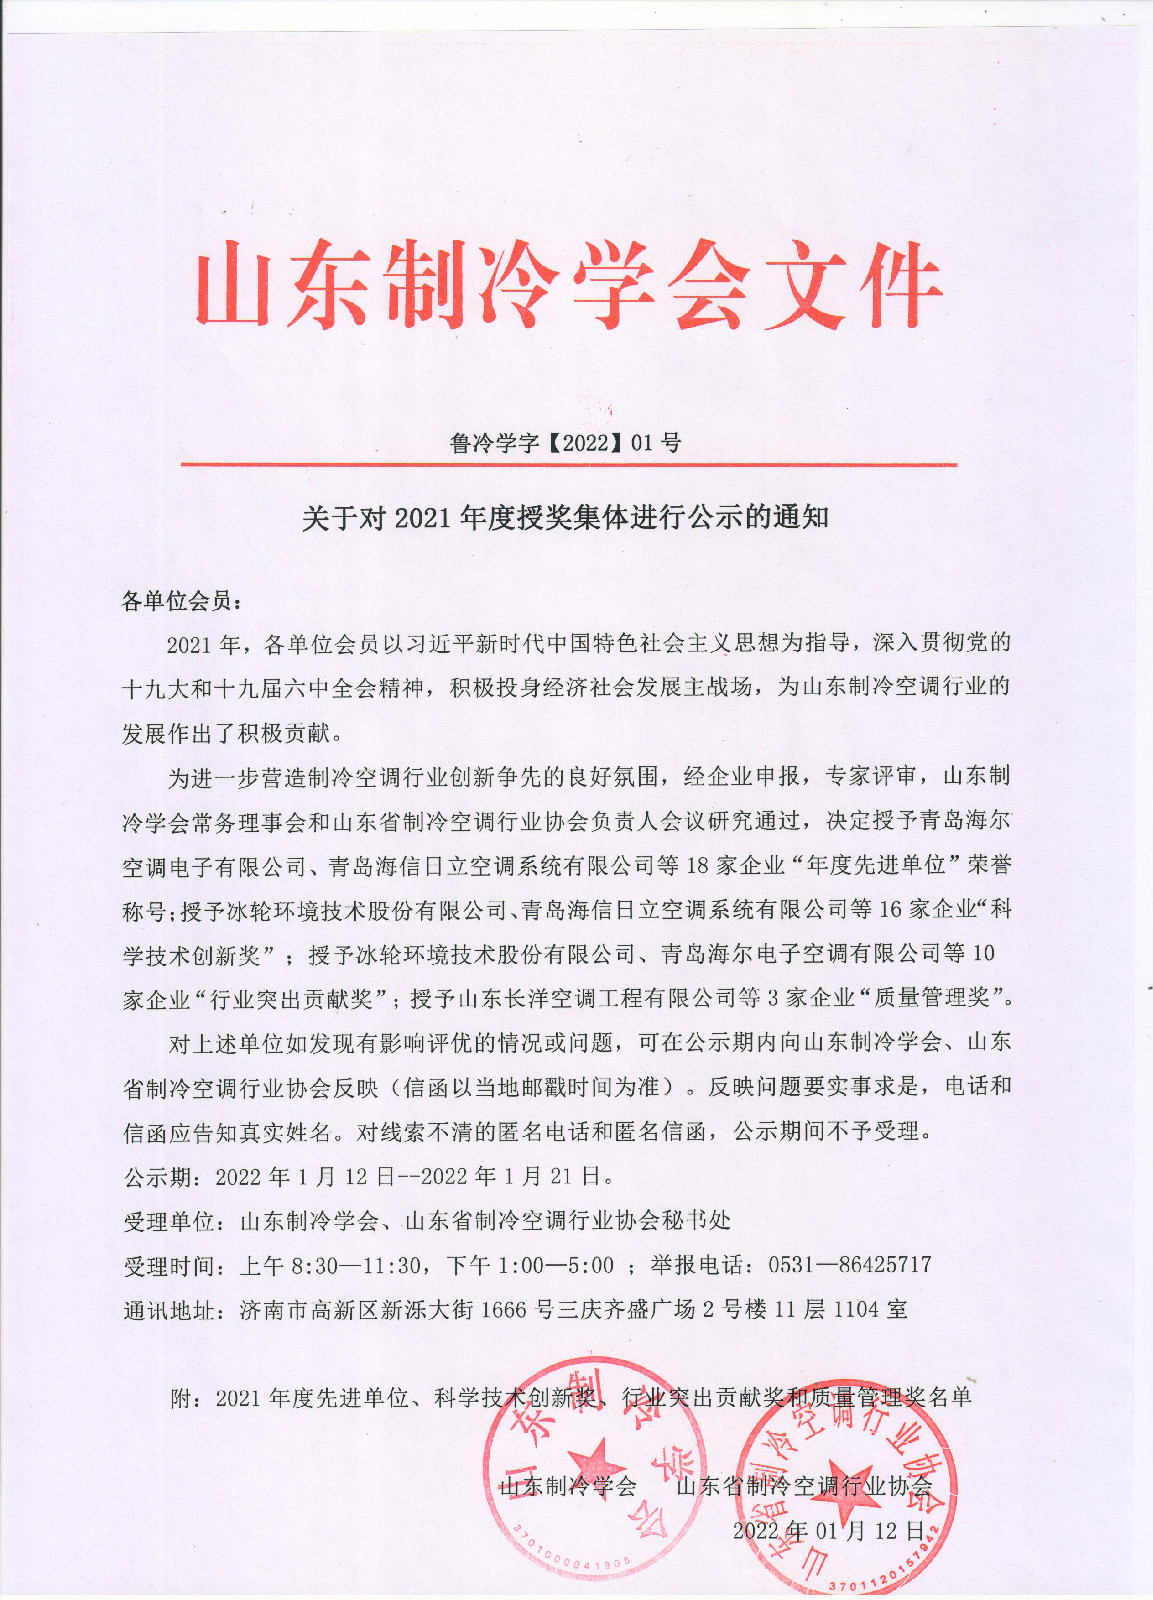 九州体育(中国)有限公司官网对2021年度授奖集体进行公示的通知 001.jpg